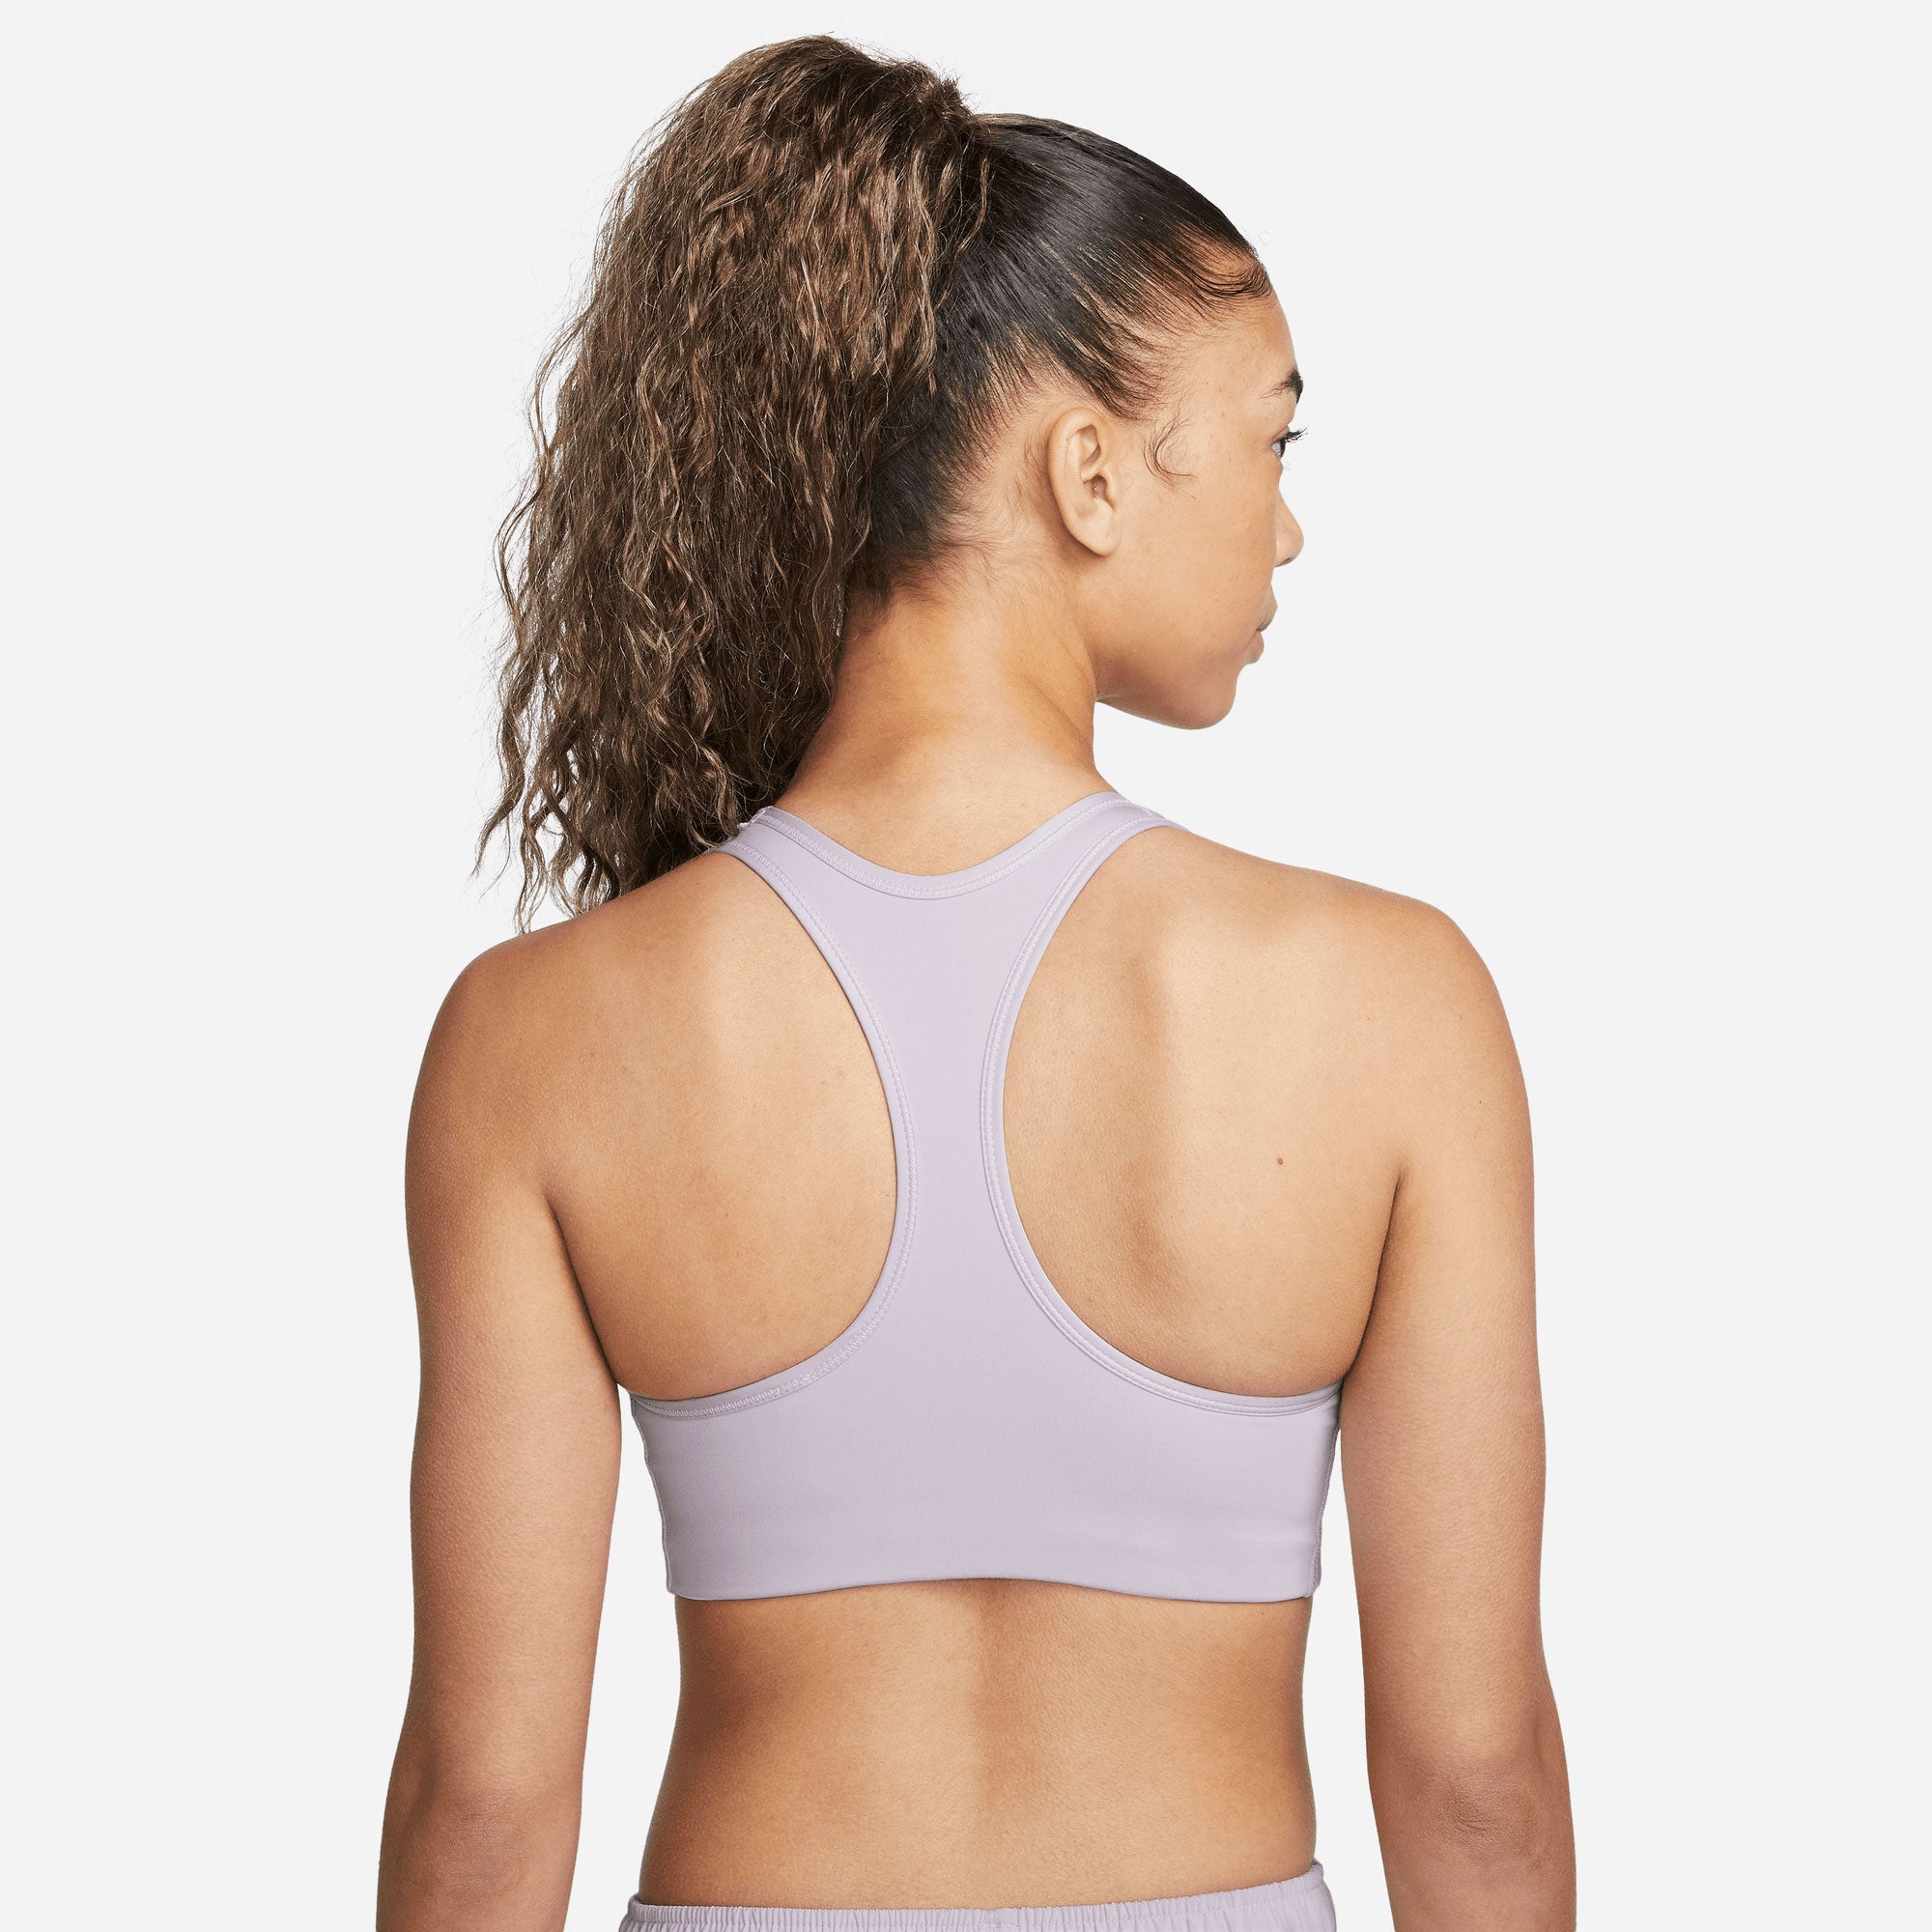 Nike Dri-FIT Women's Medium-Support 1-Piece Pad Sports Bra - Black